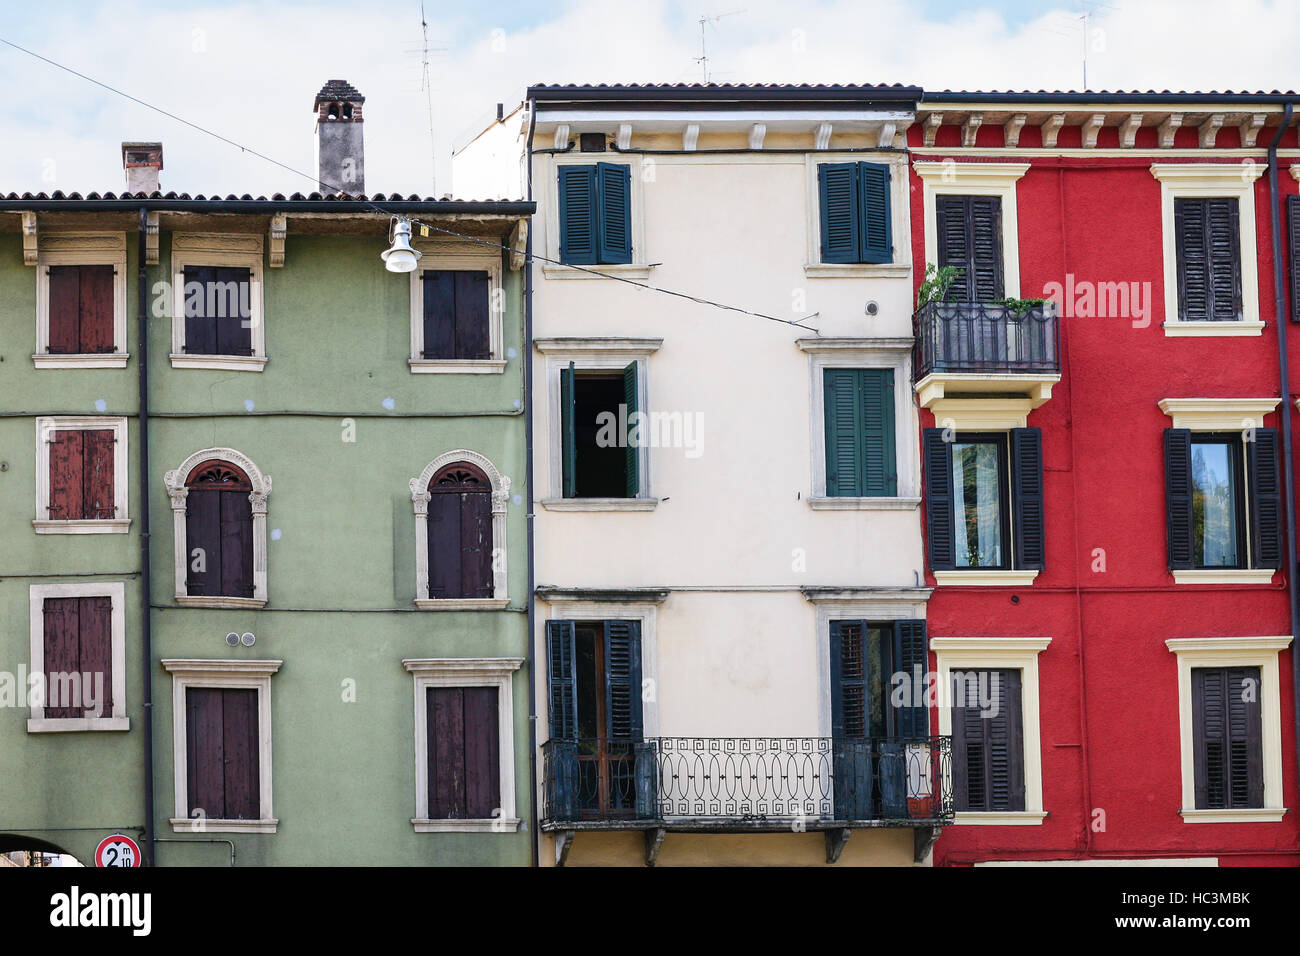 Voyage d'Italie - sur les façades des maisons dans la ville de Vérone vivant Banque D'Images